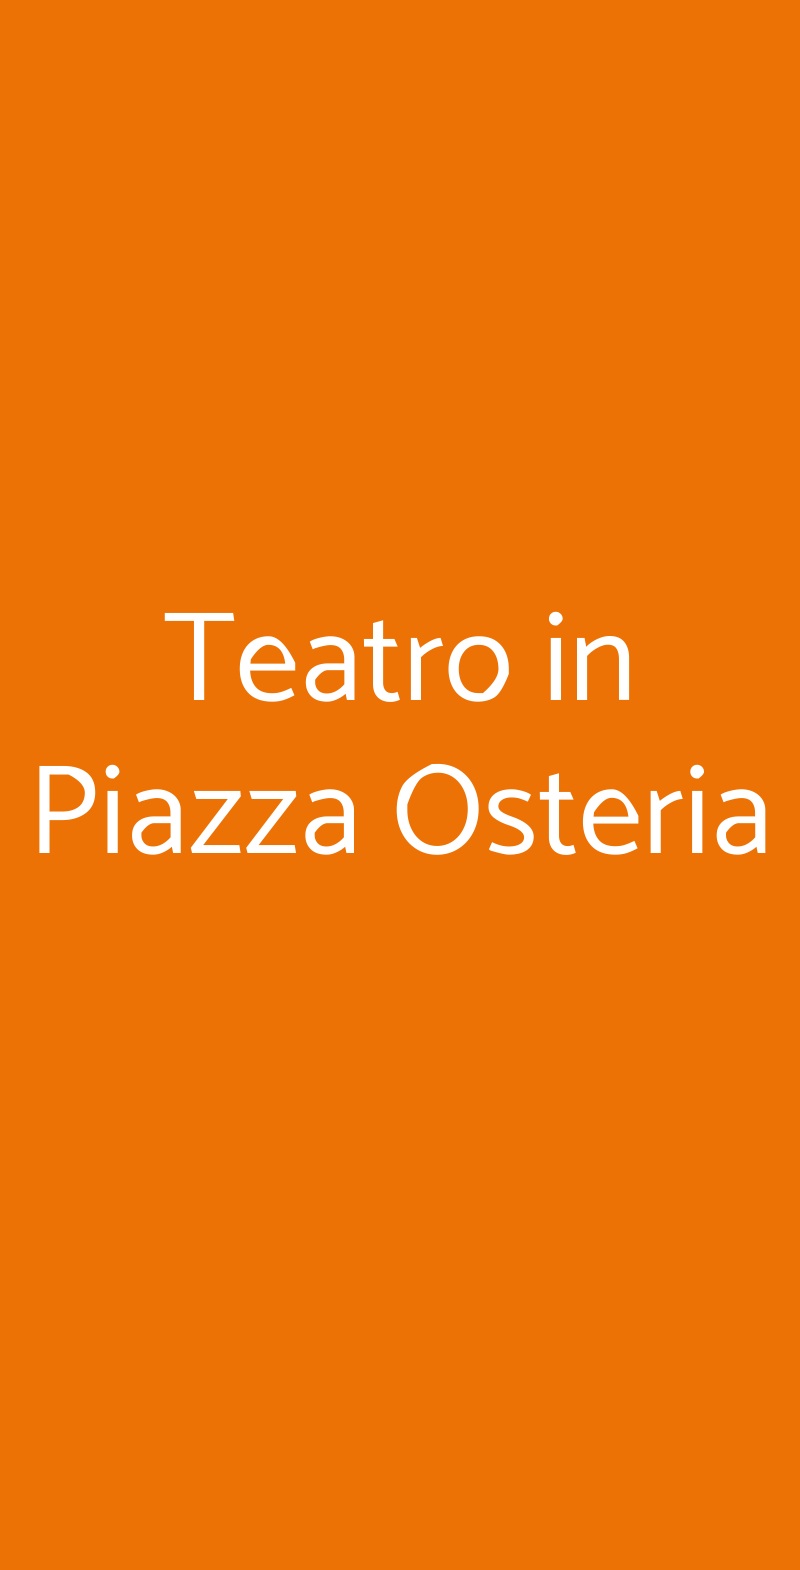 Teatro in Piazza Osteria Rimini menù 1 pagina